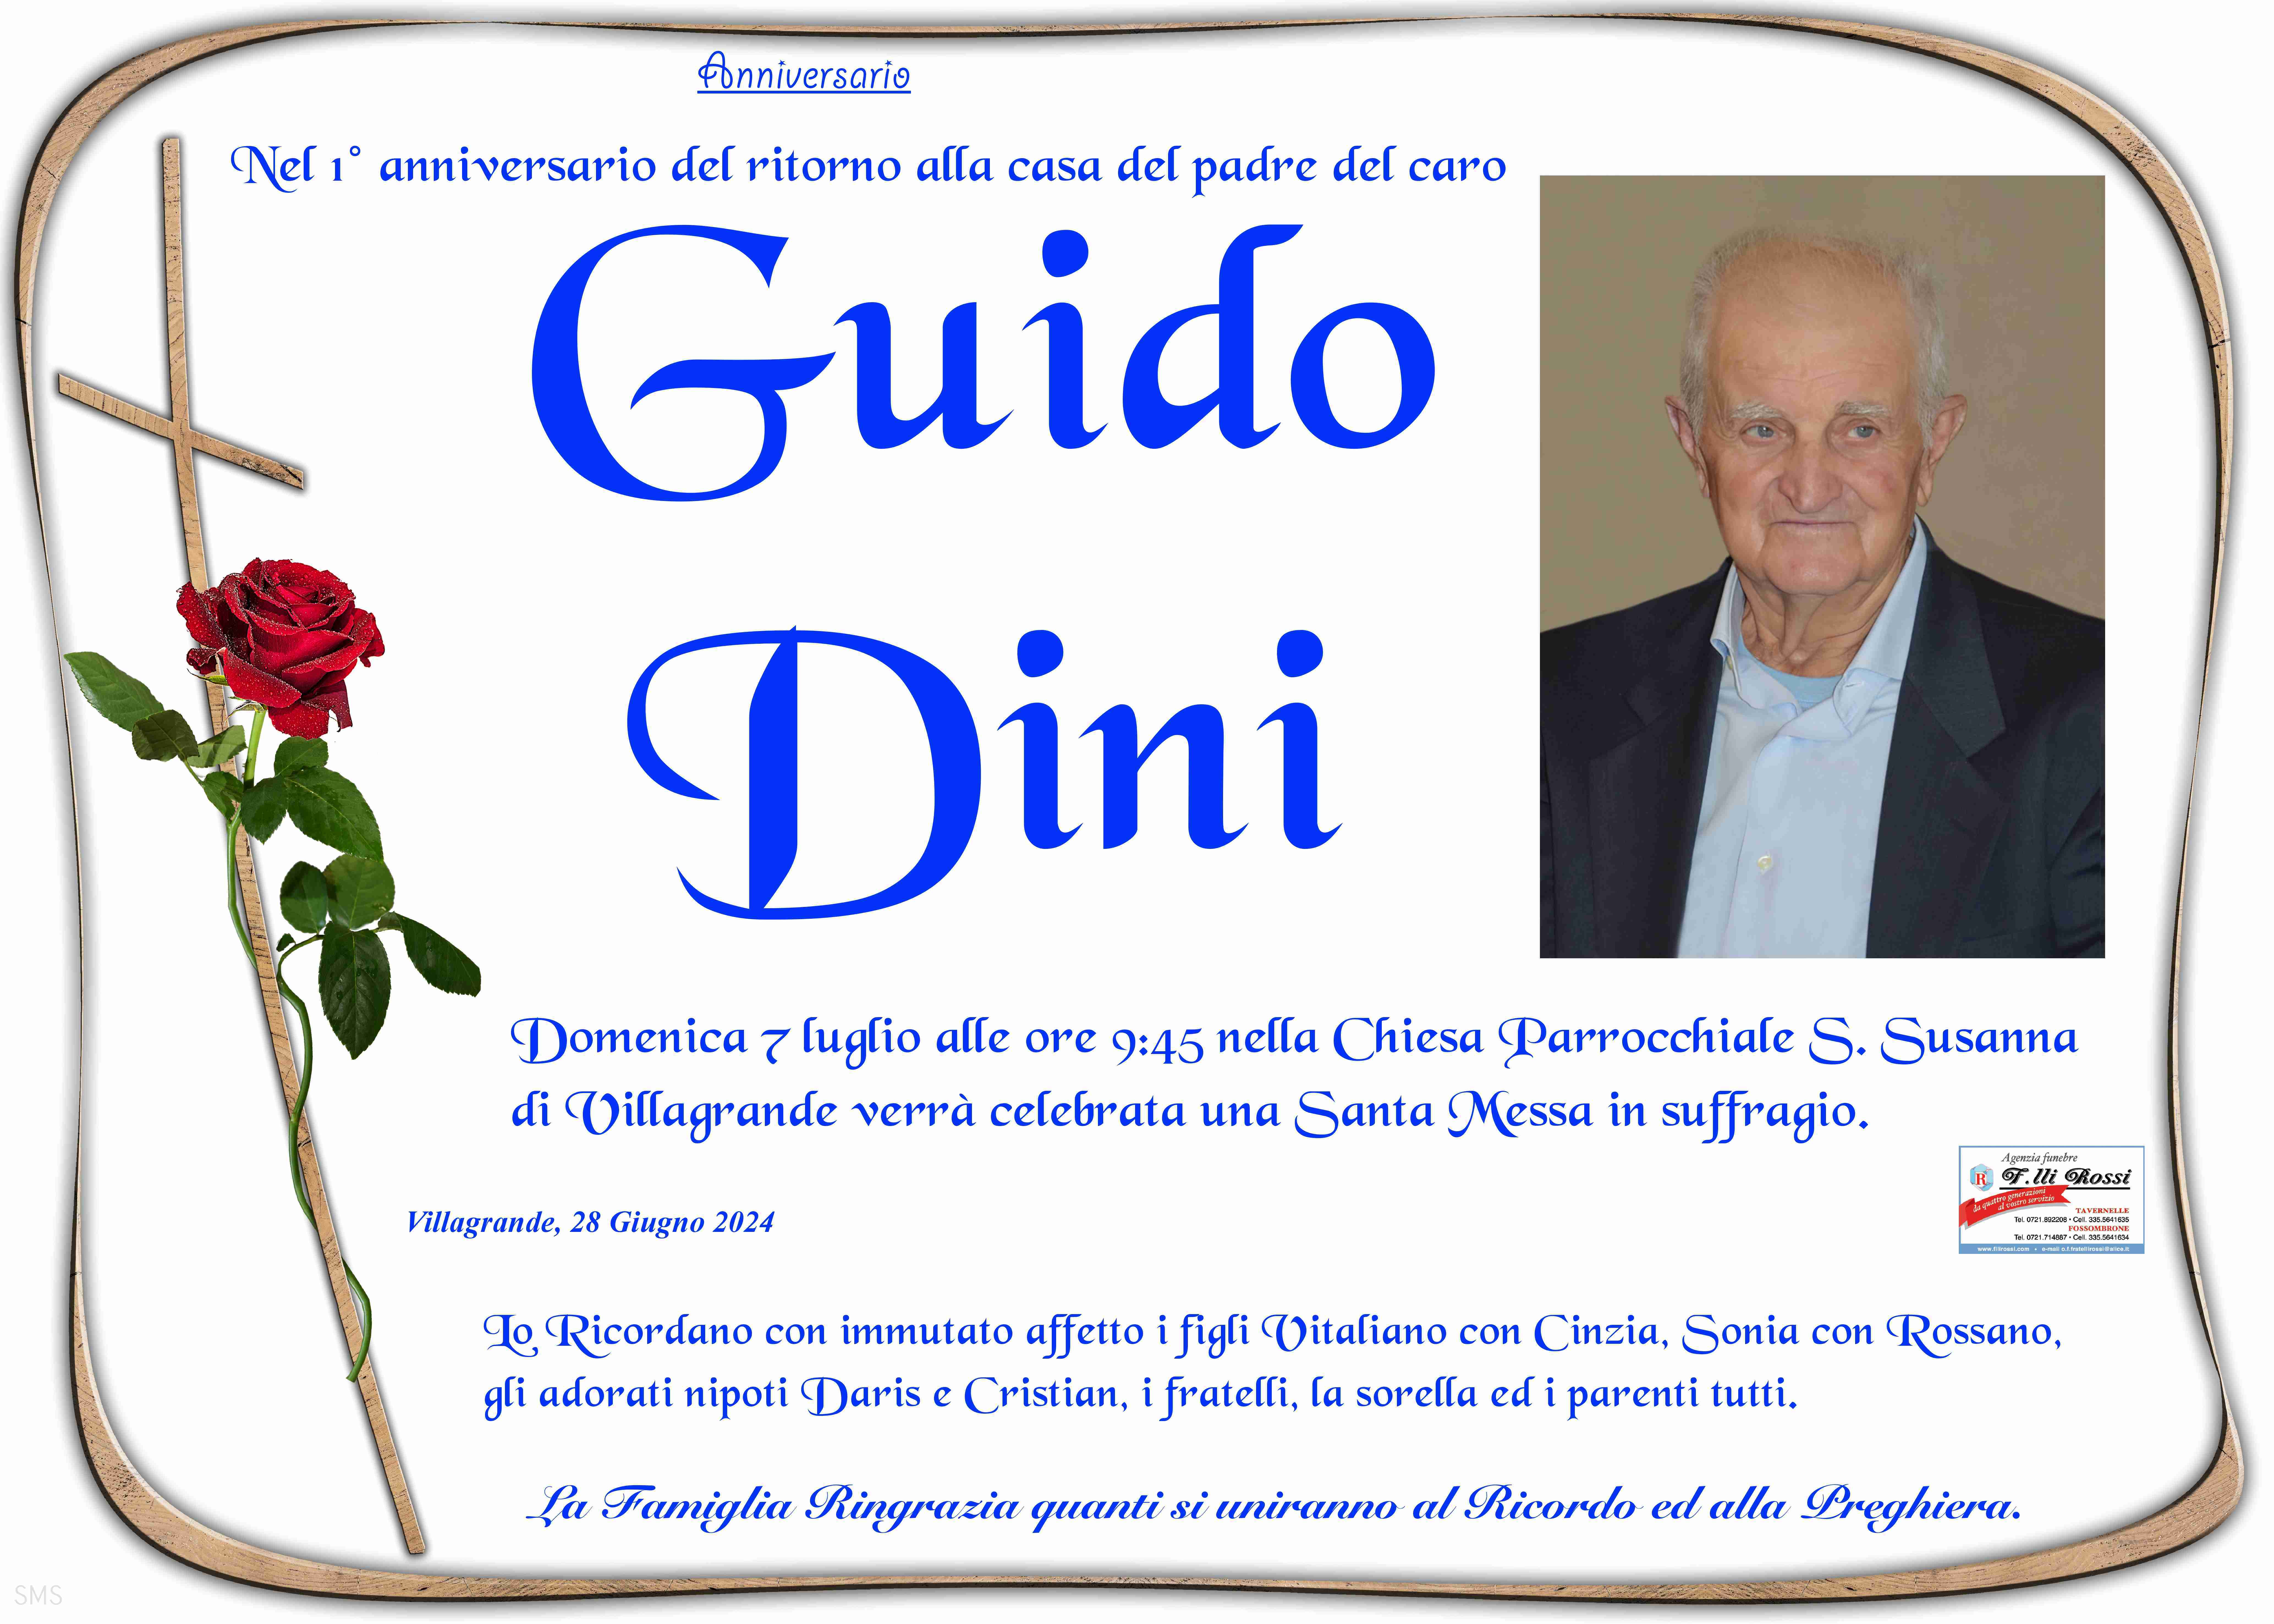 Guido Dini